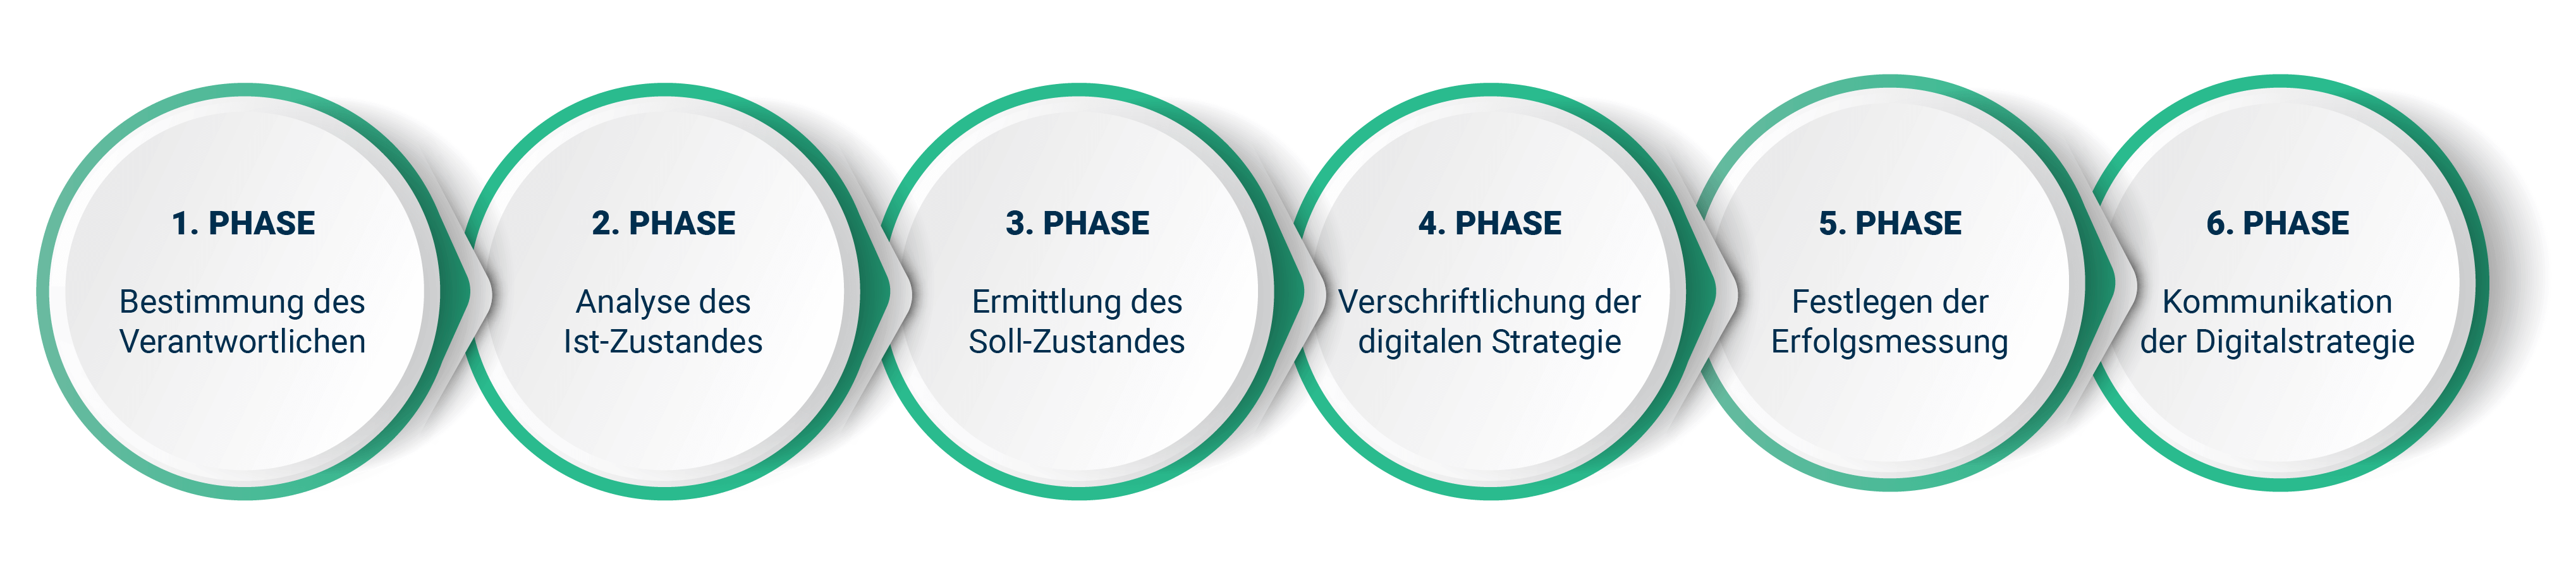 Sechs Kreise mit den sechs Phasen einer Digitalisierungsstrategie